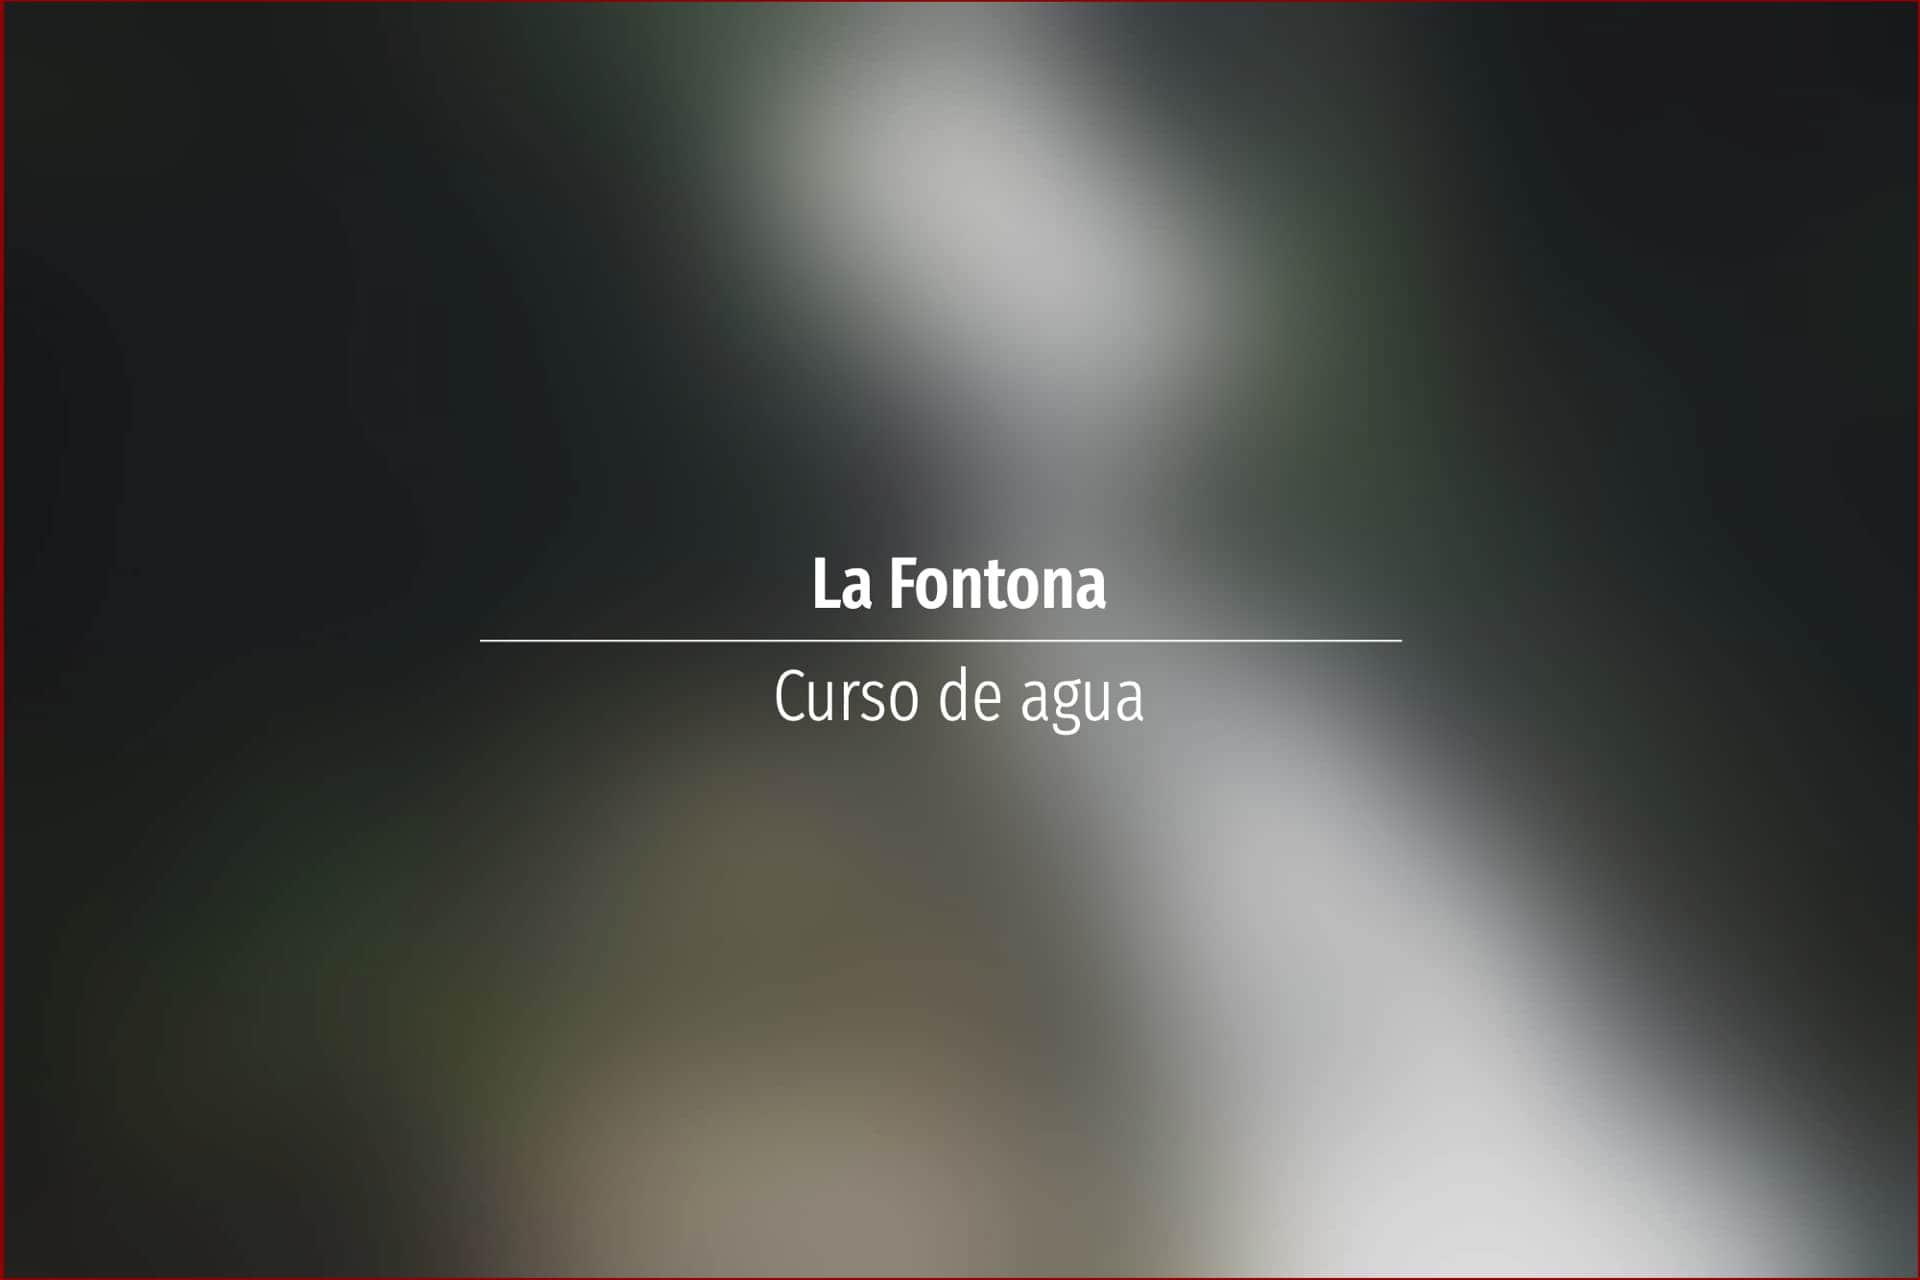 La Fontona